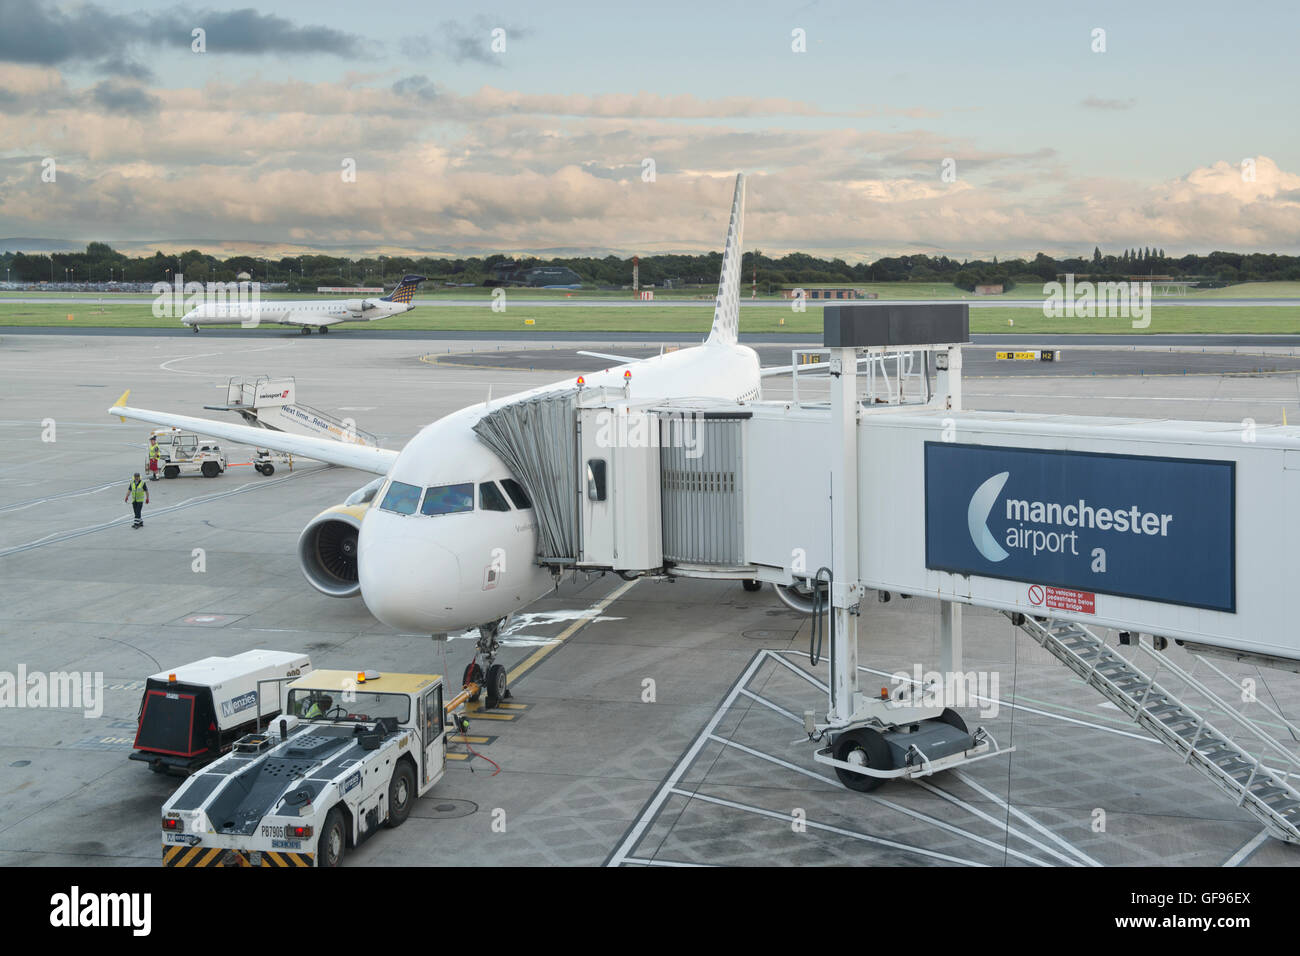 La papeterie est un avion sur le tarmac de l'aéroport de Manchester alors que les passagers et les bagages sont chargés (usage éditorial uniquement). Banque D'Images